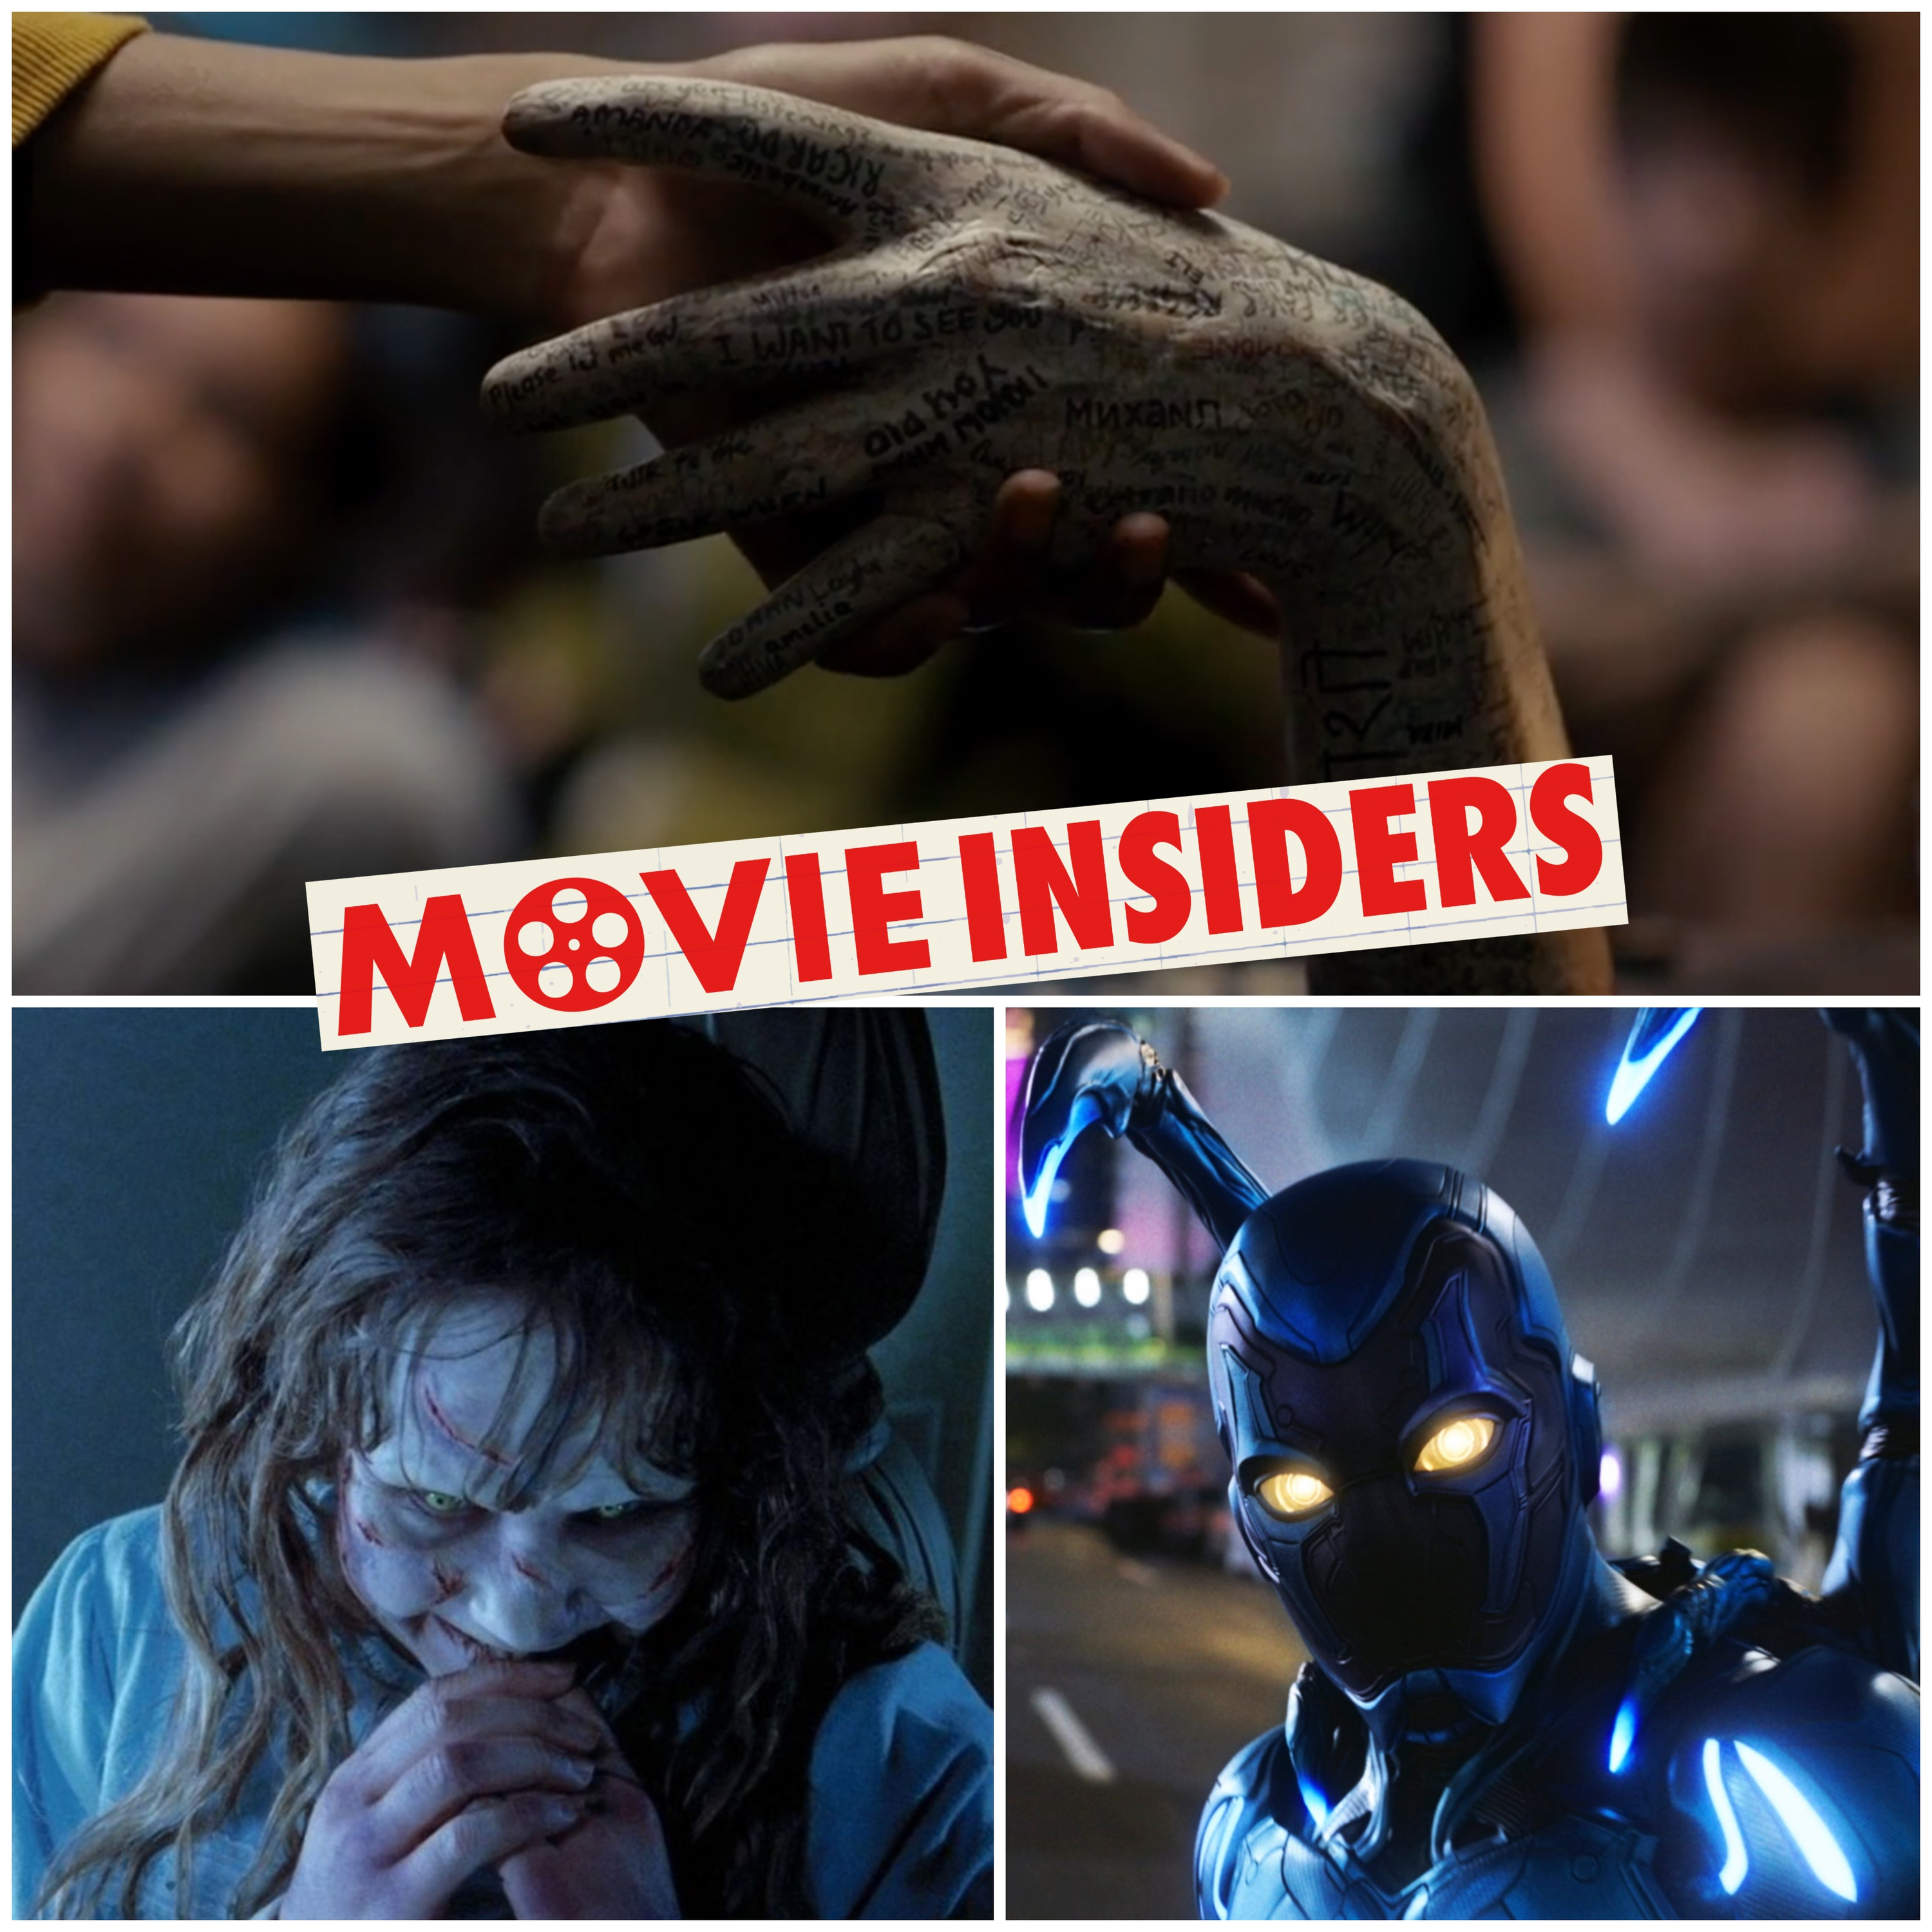 MovieInsiders 370: Talk to Me, The Exorcist, Blue Beetle, Gran Turismo, TMNT: Mutant Mayhem, Riceboy Sleeps